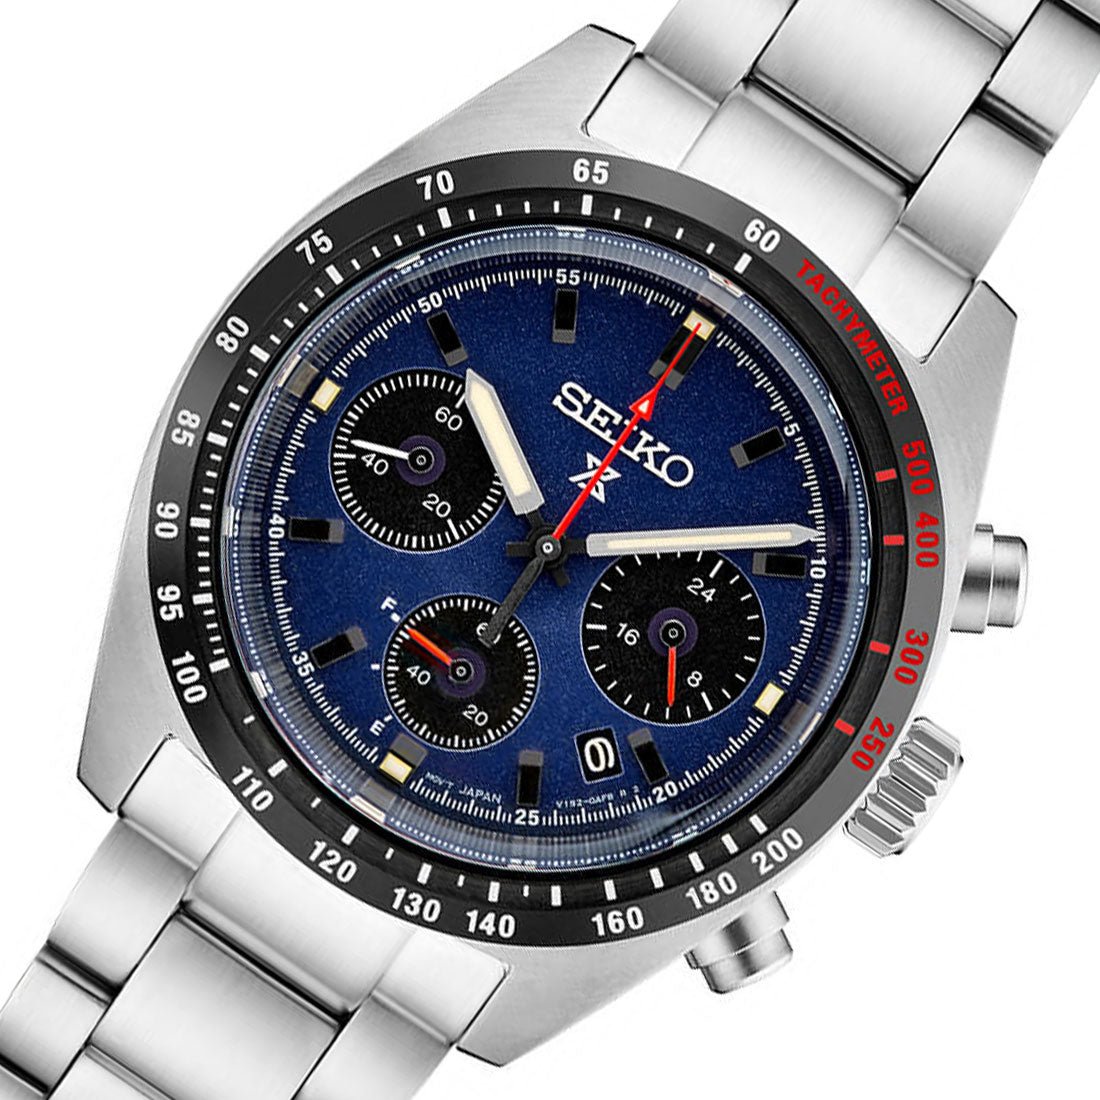 Seiko Prospex Chronograph Solar SpeedTimer JDM Blue Dial Watch SBDL087 -Seiko